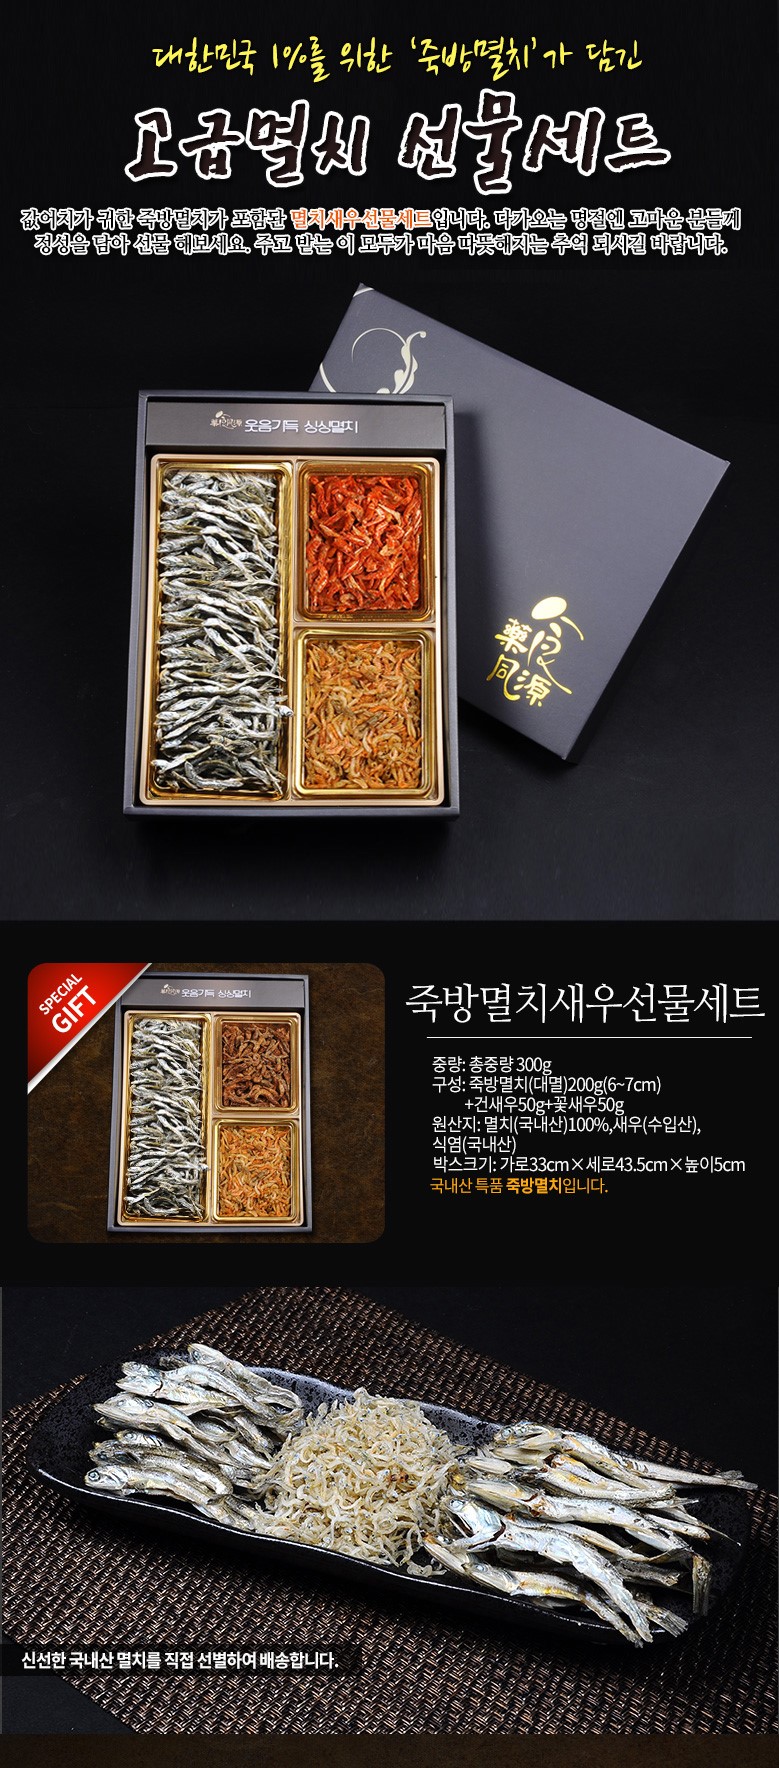 韓國食品-[Eshop Limited Quantity!] [Nooriwon] Anchovy and Dried Shrimp Gift set 300g